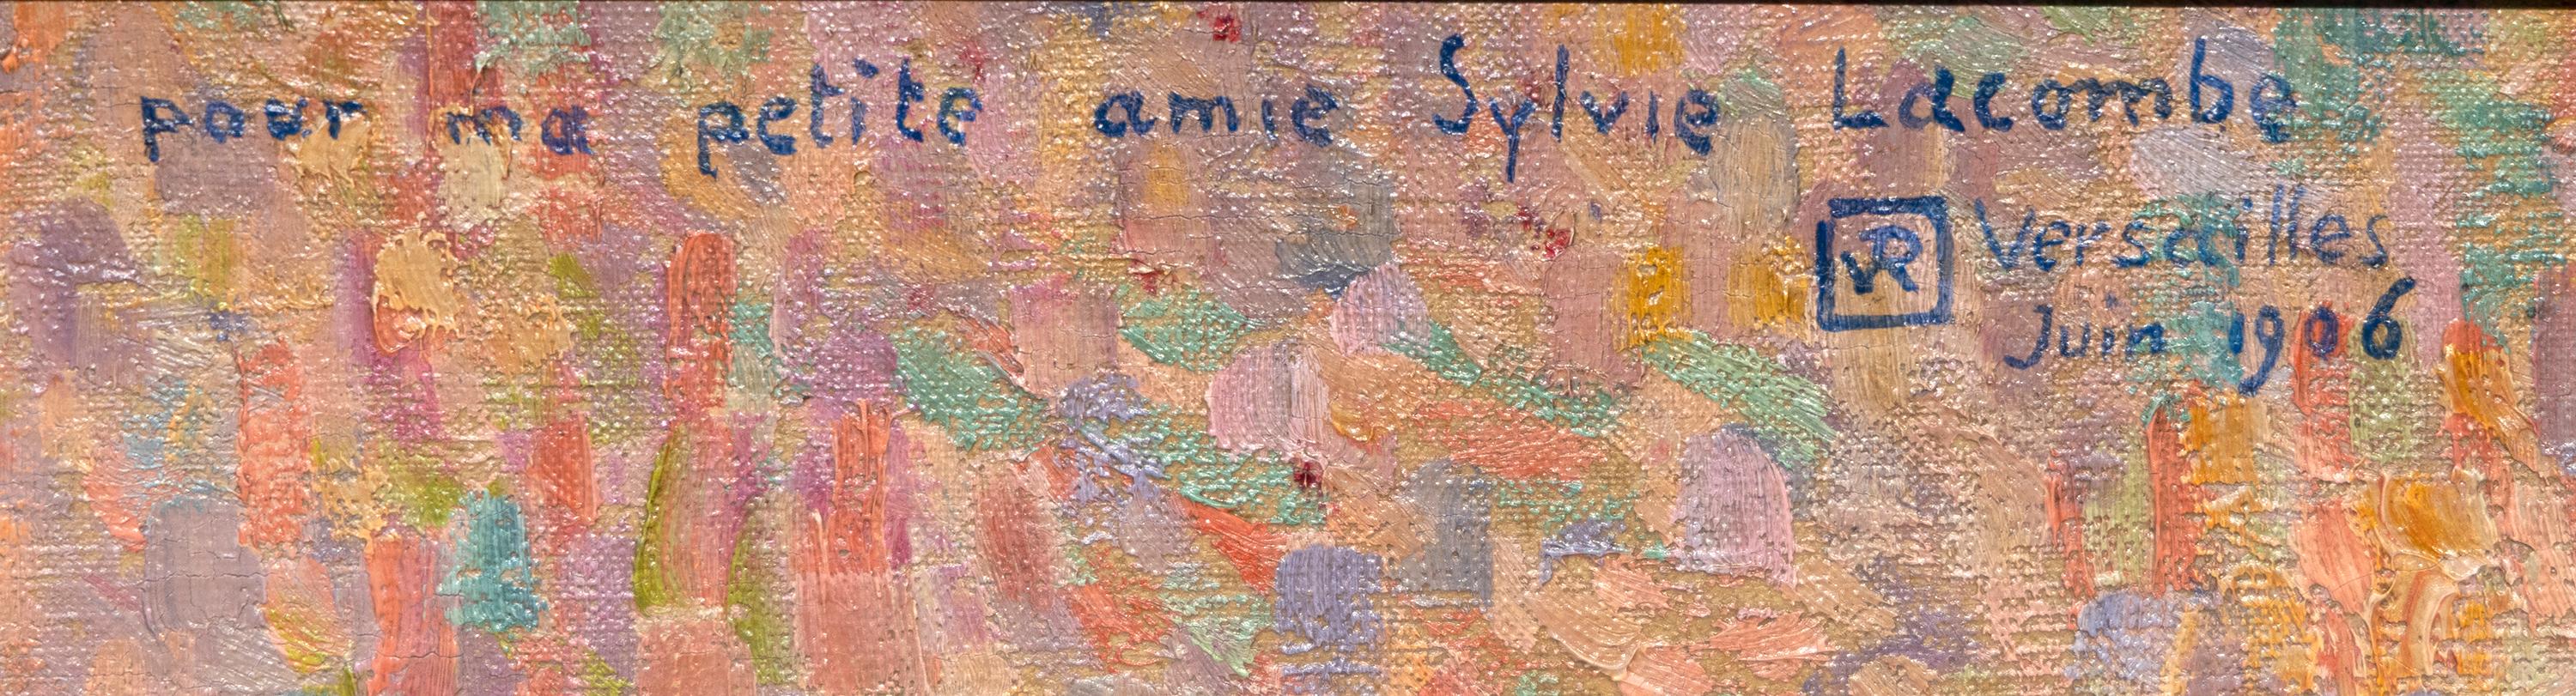 Porträt von Sylvie Lacombe (Post-Impressionismus), Painting, von Theo van Rysselberghe